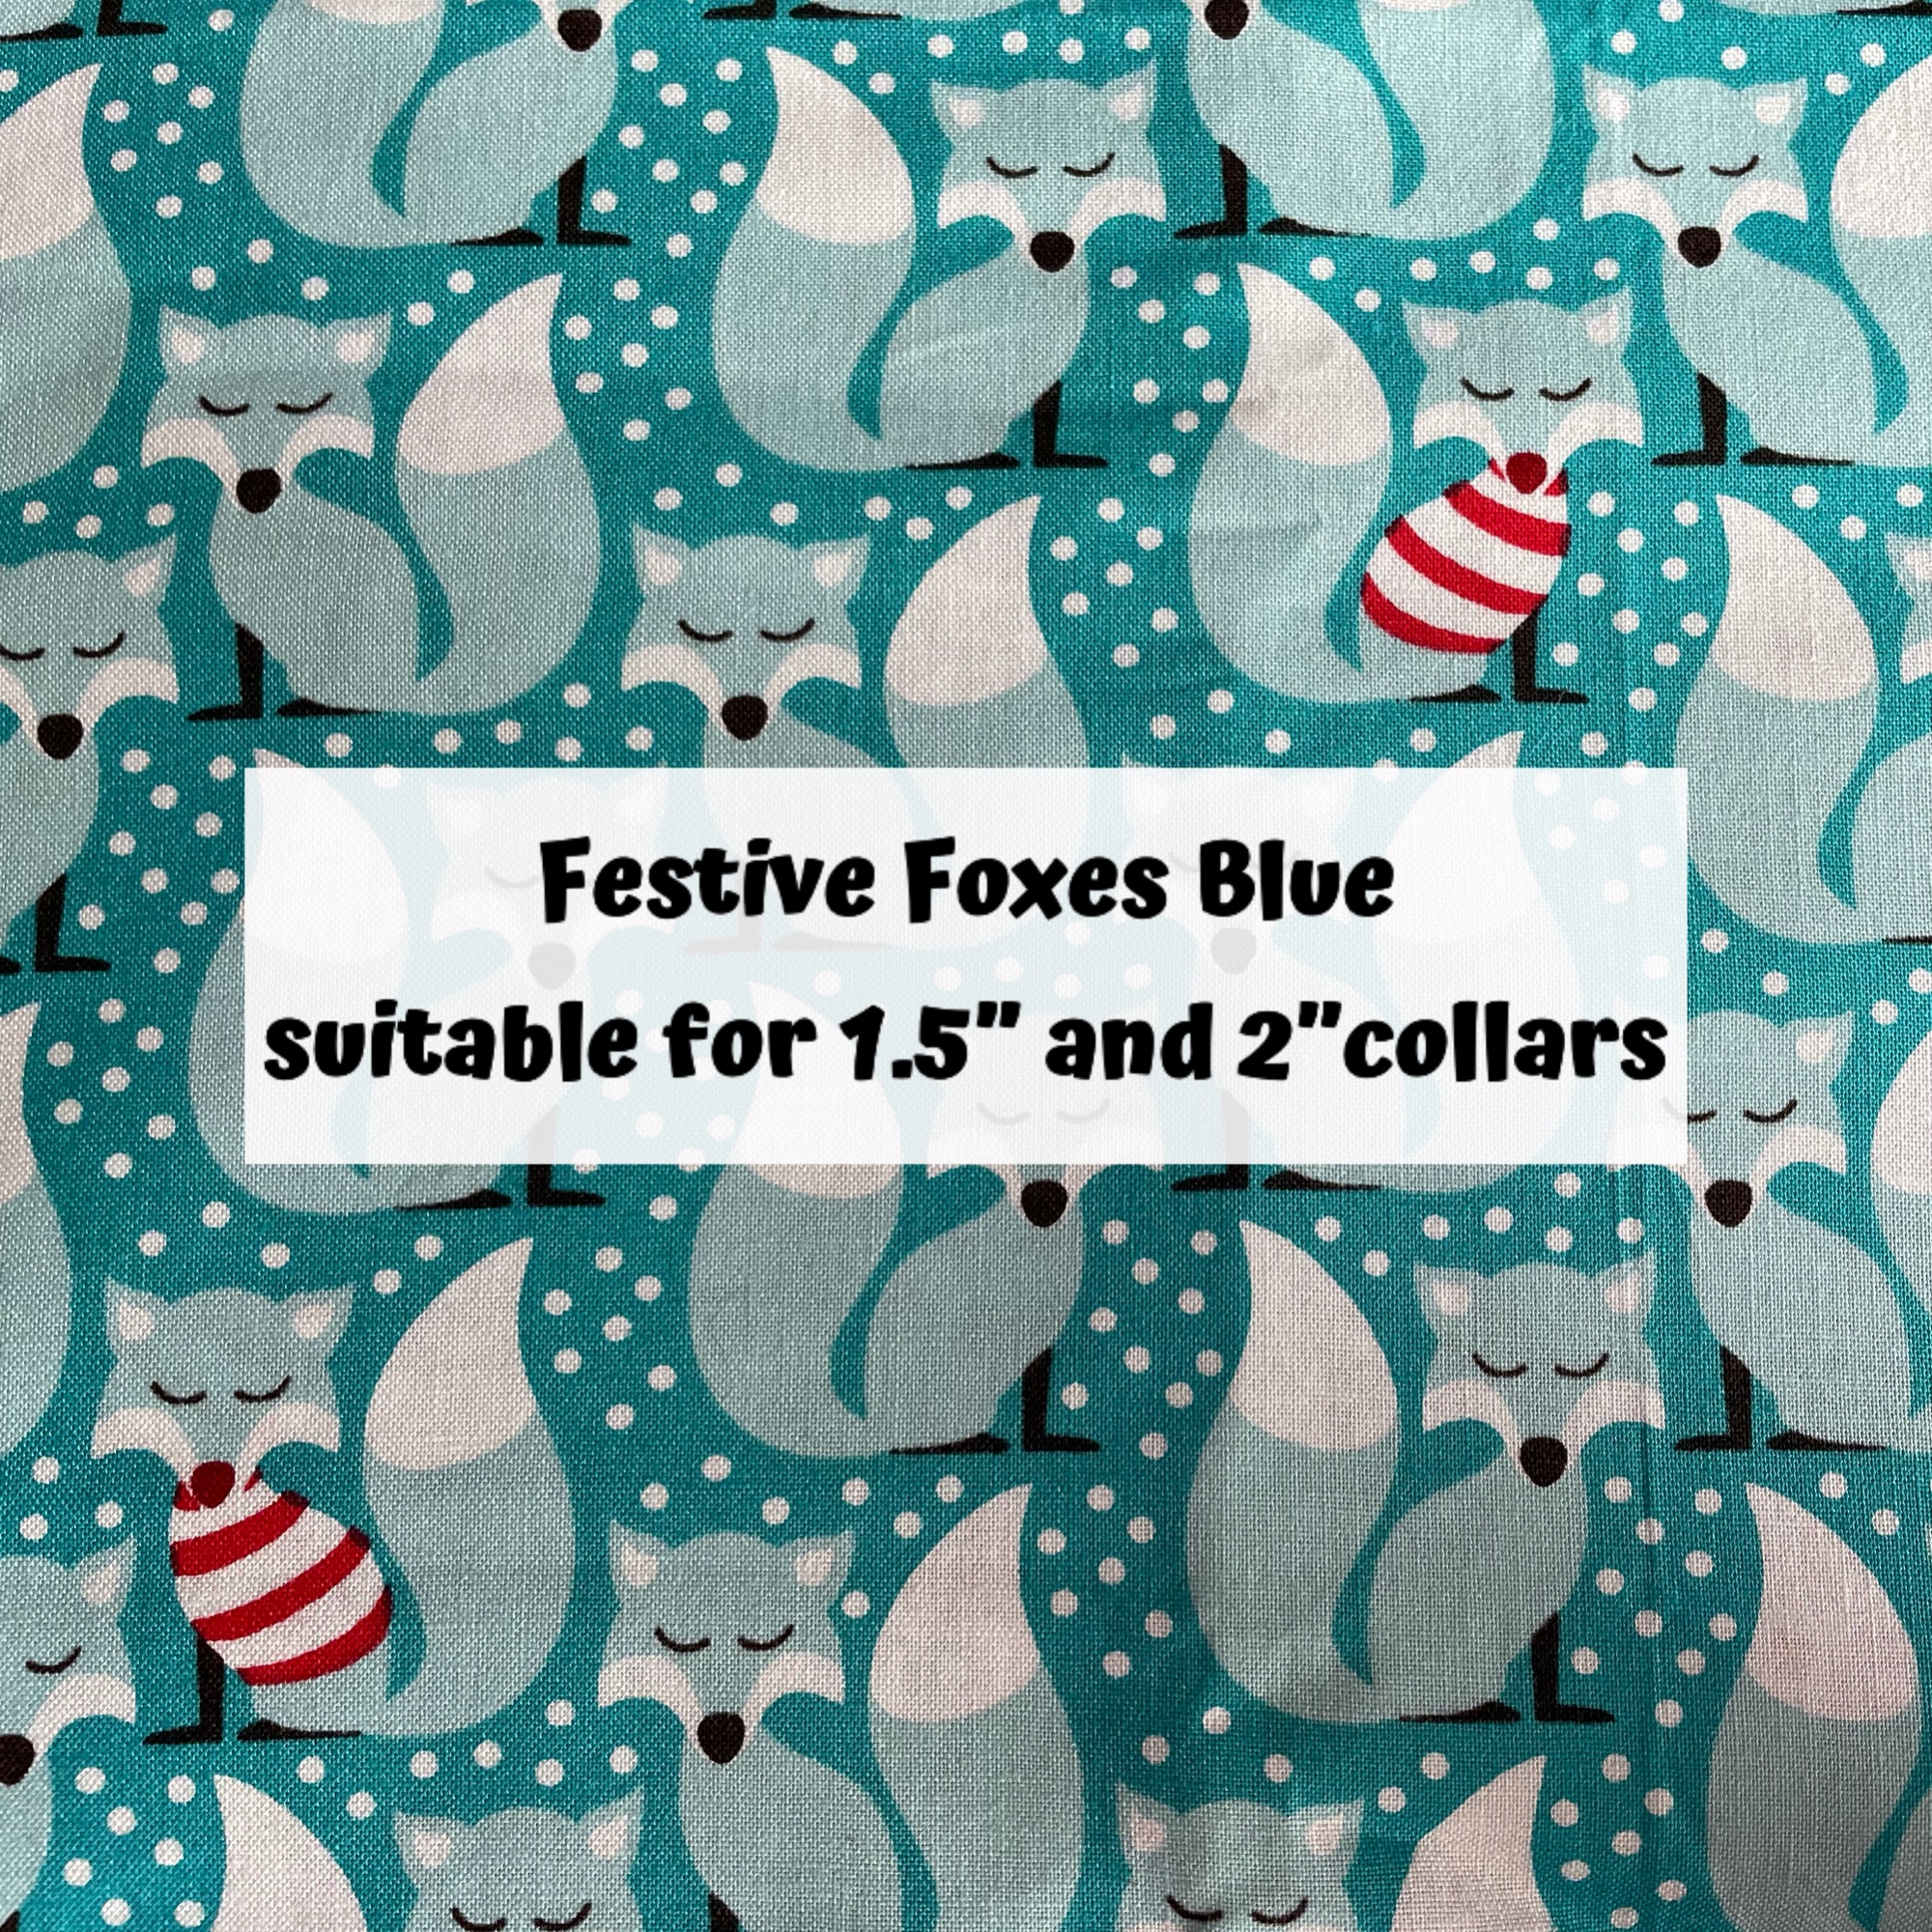 Festive Foxes Blue